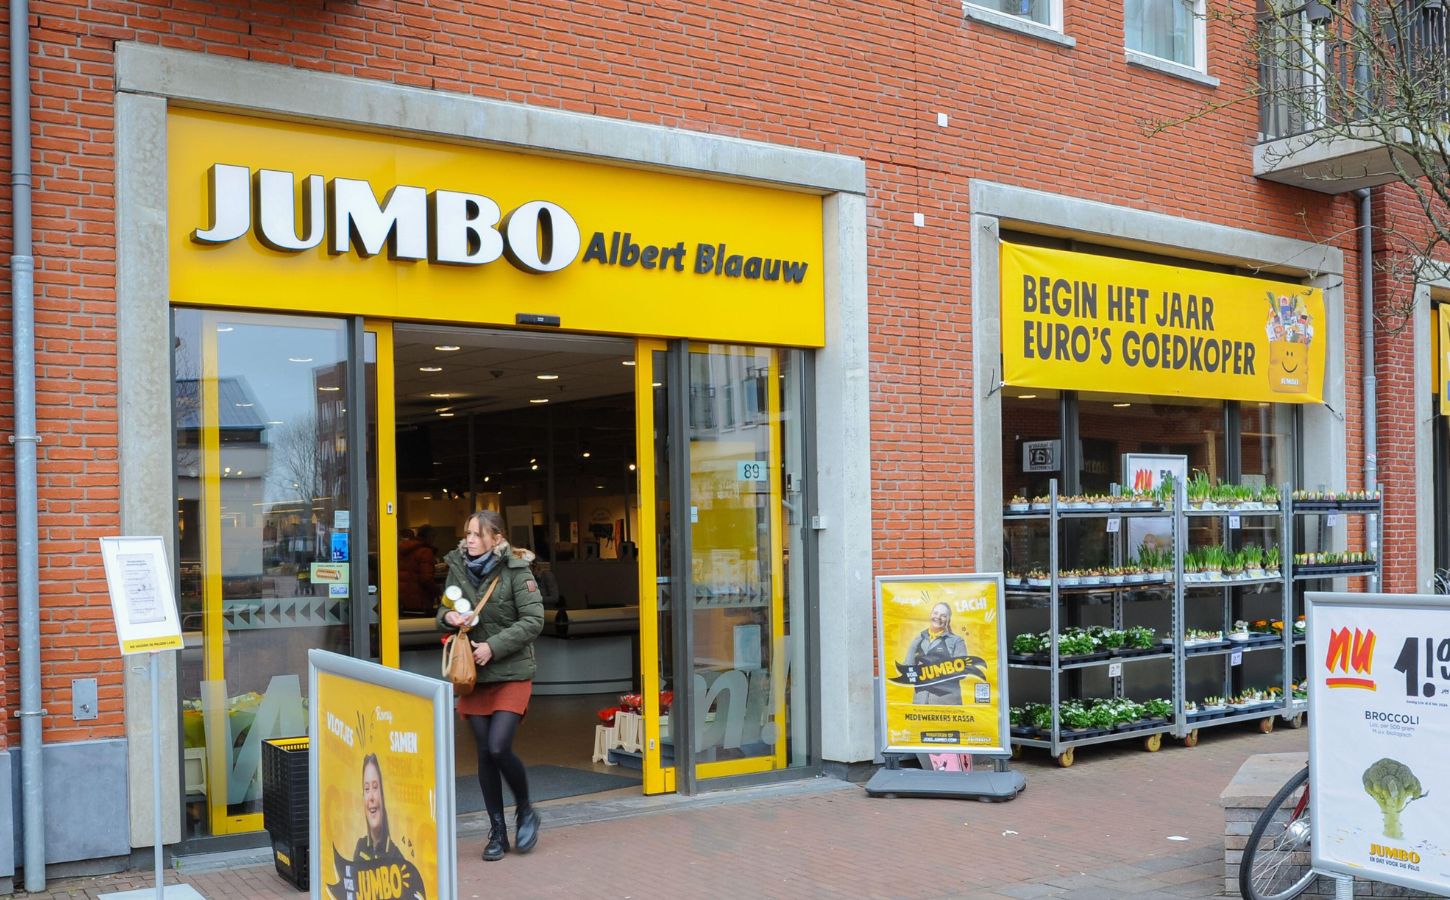 Jumbo supermarket